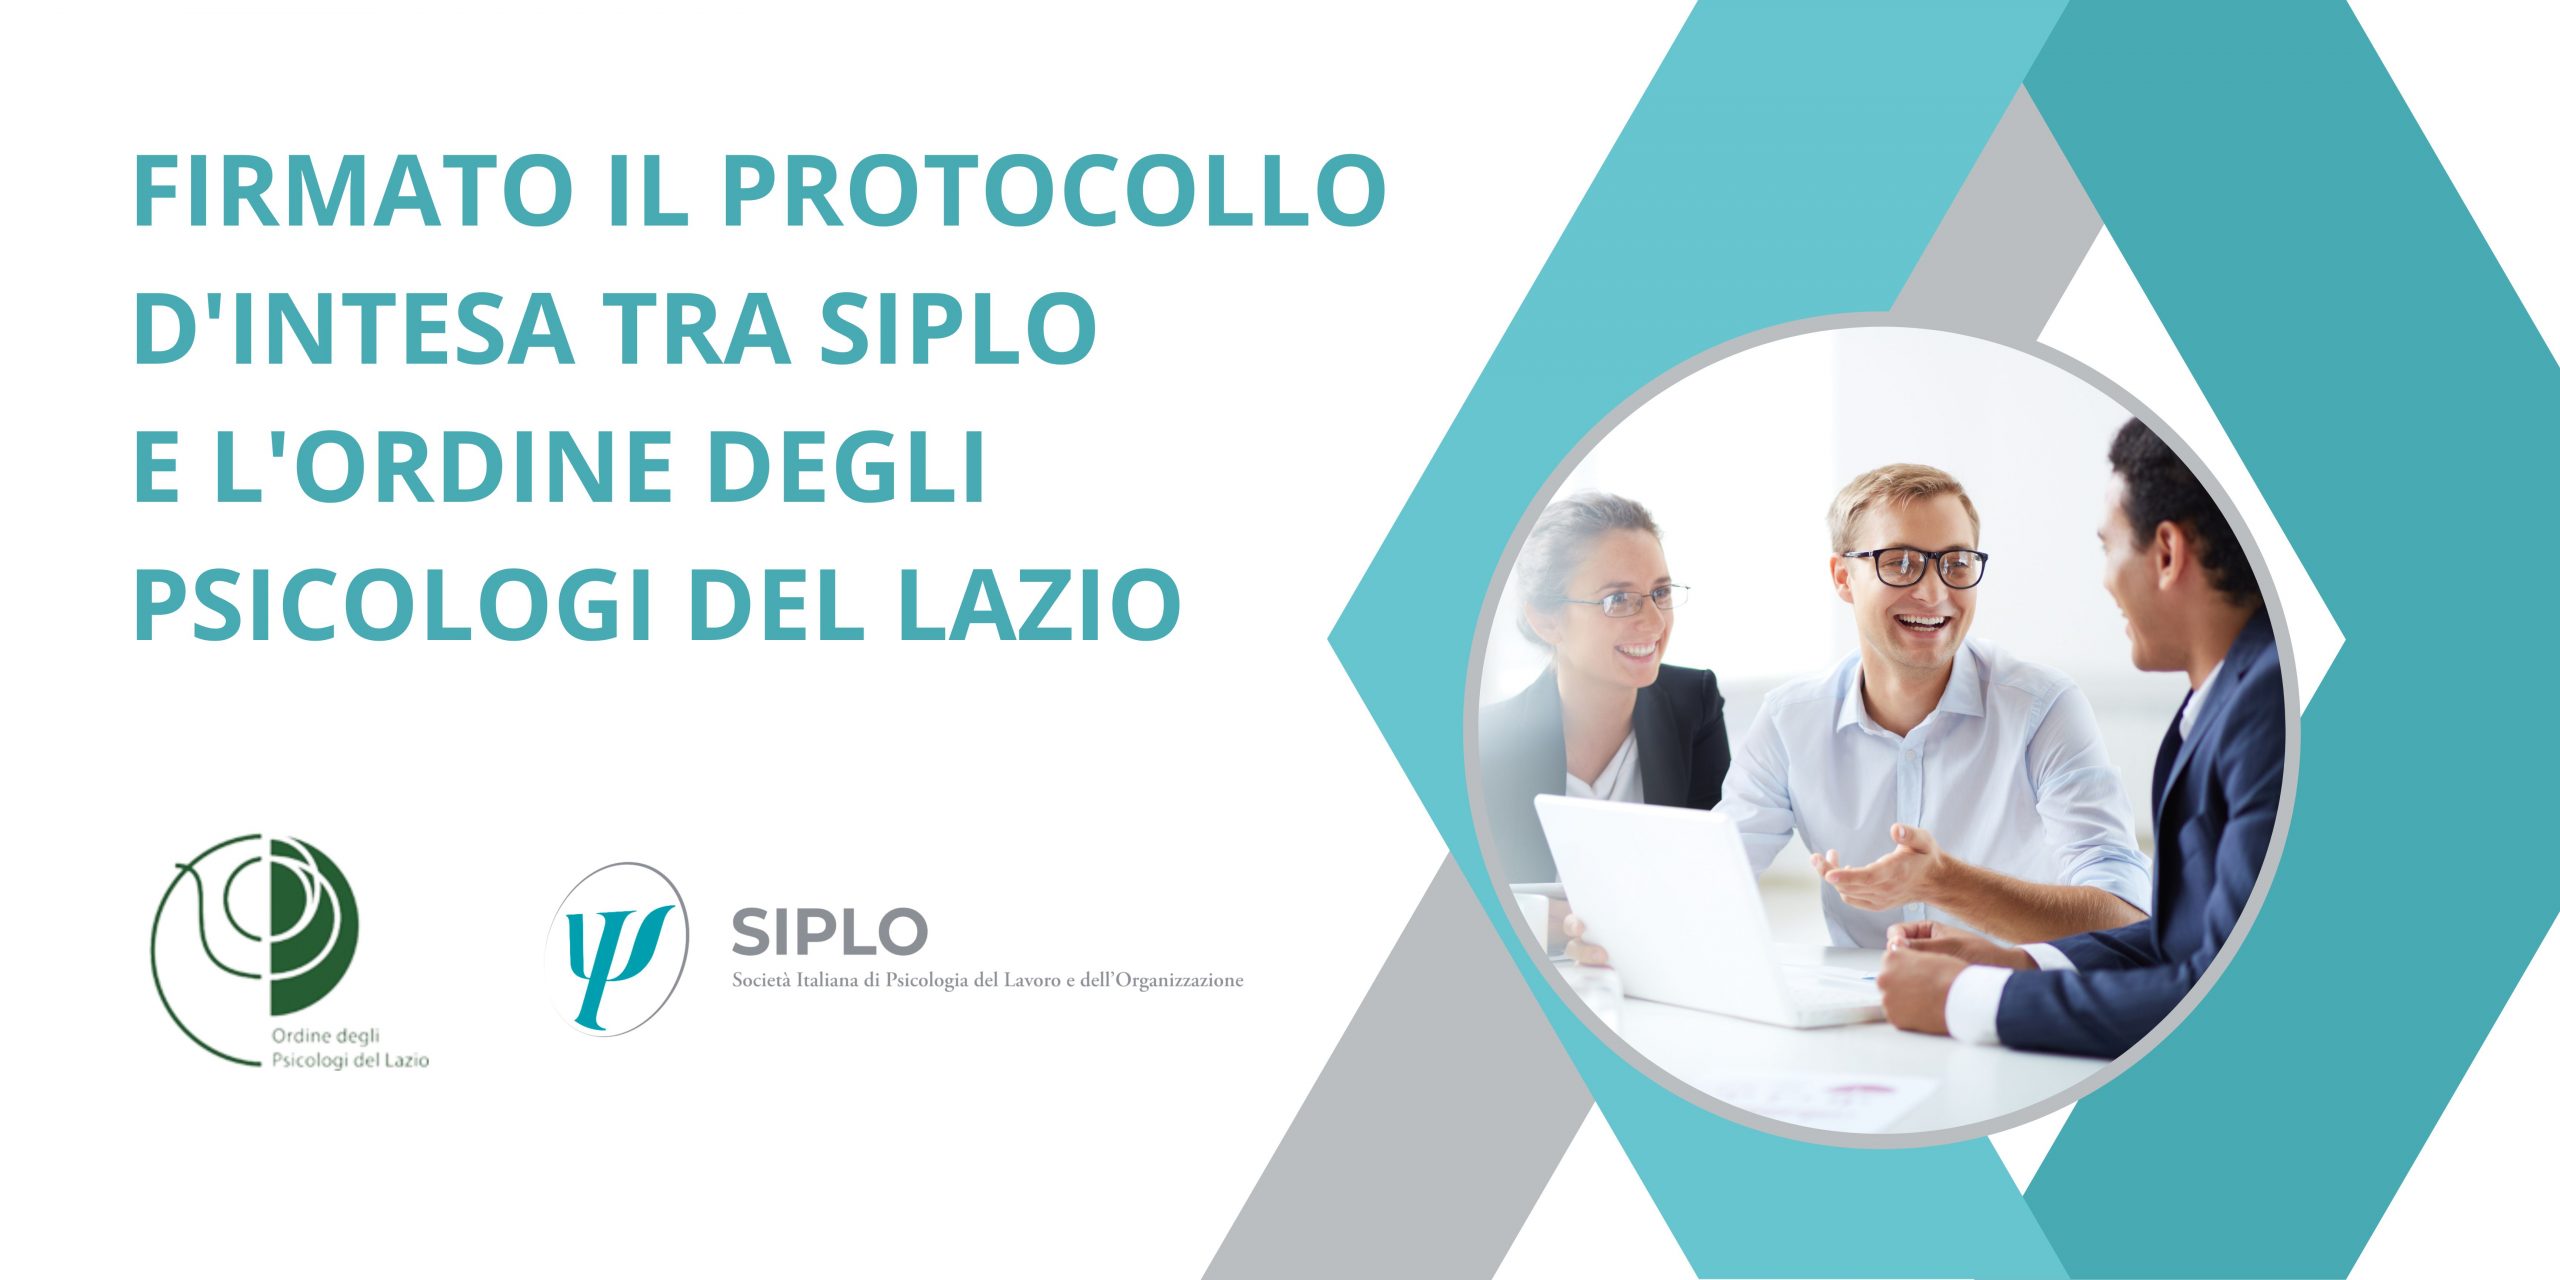 Al momento stai visualizzando Il protocollo d’intesa tra SIPLO e l’Ordine degli Psicologi del Lazio.